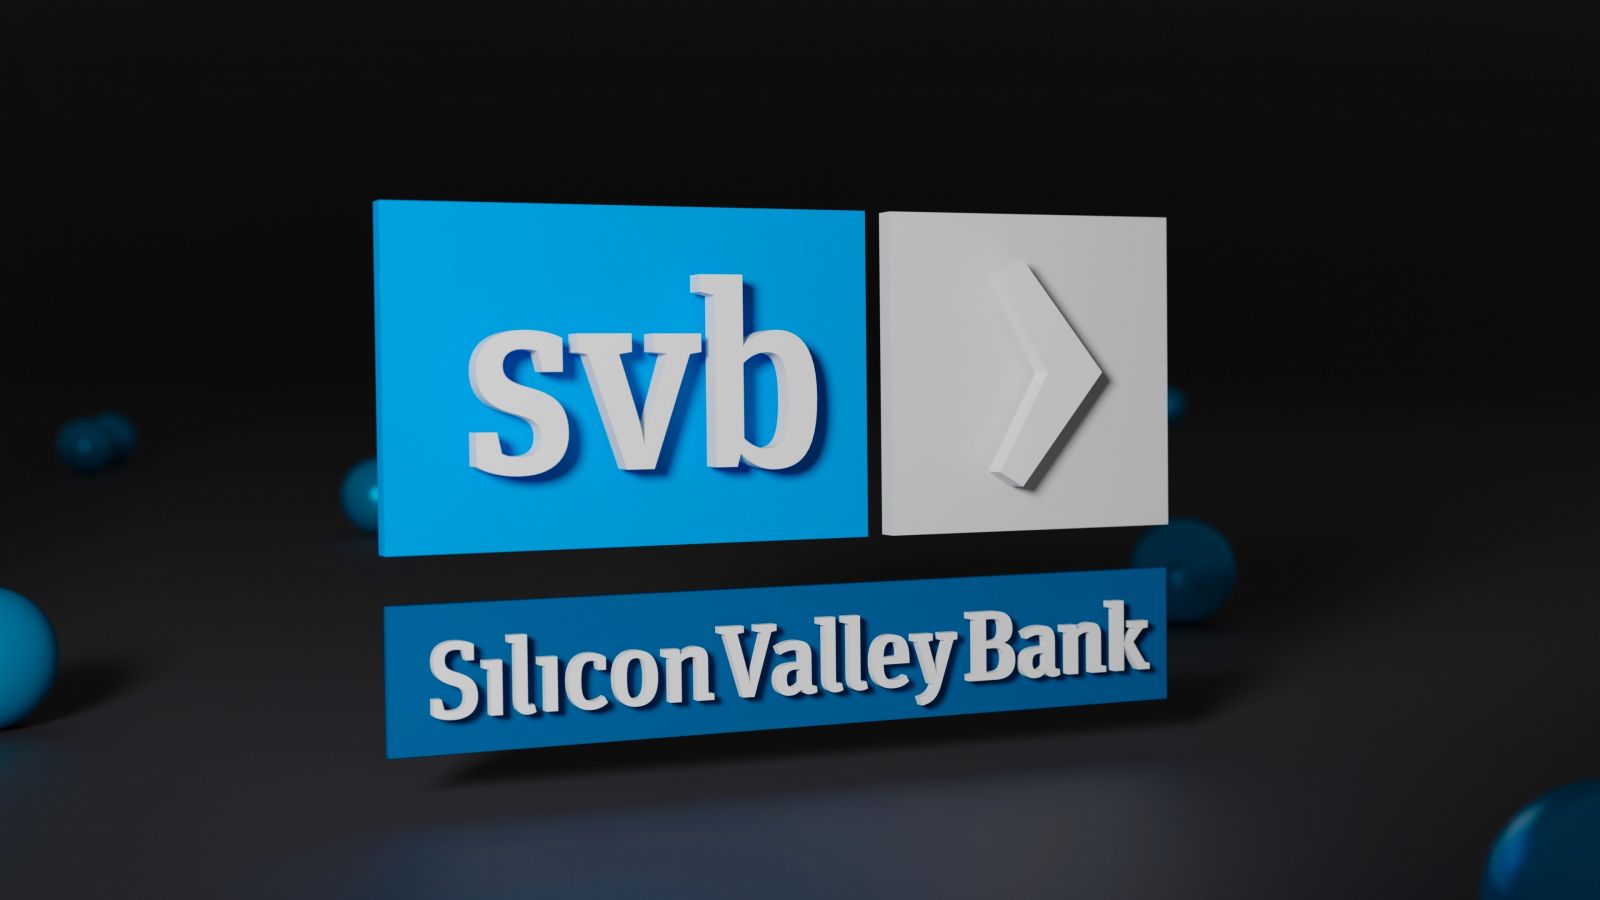 Ngân hàng Silicon Valley đã sụp đổ vào ngày 10/3 (hình: Unplash).